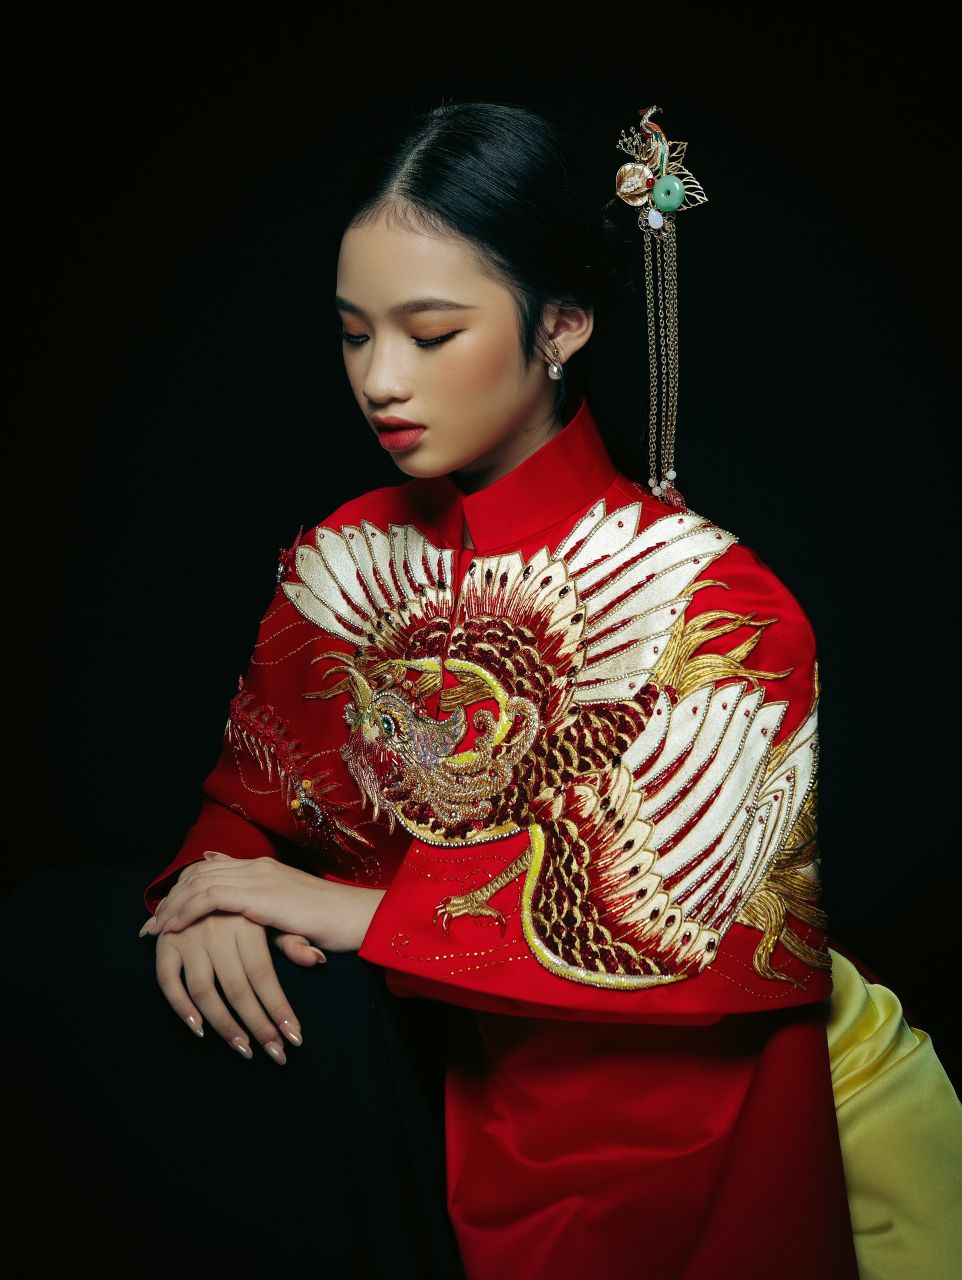 Bao Ha3 Mẫu nhí Bảo Hà đẹp lạ trong bộ ảnh lấy cảm hứng từ văn hóa Á Đông